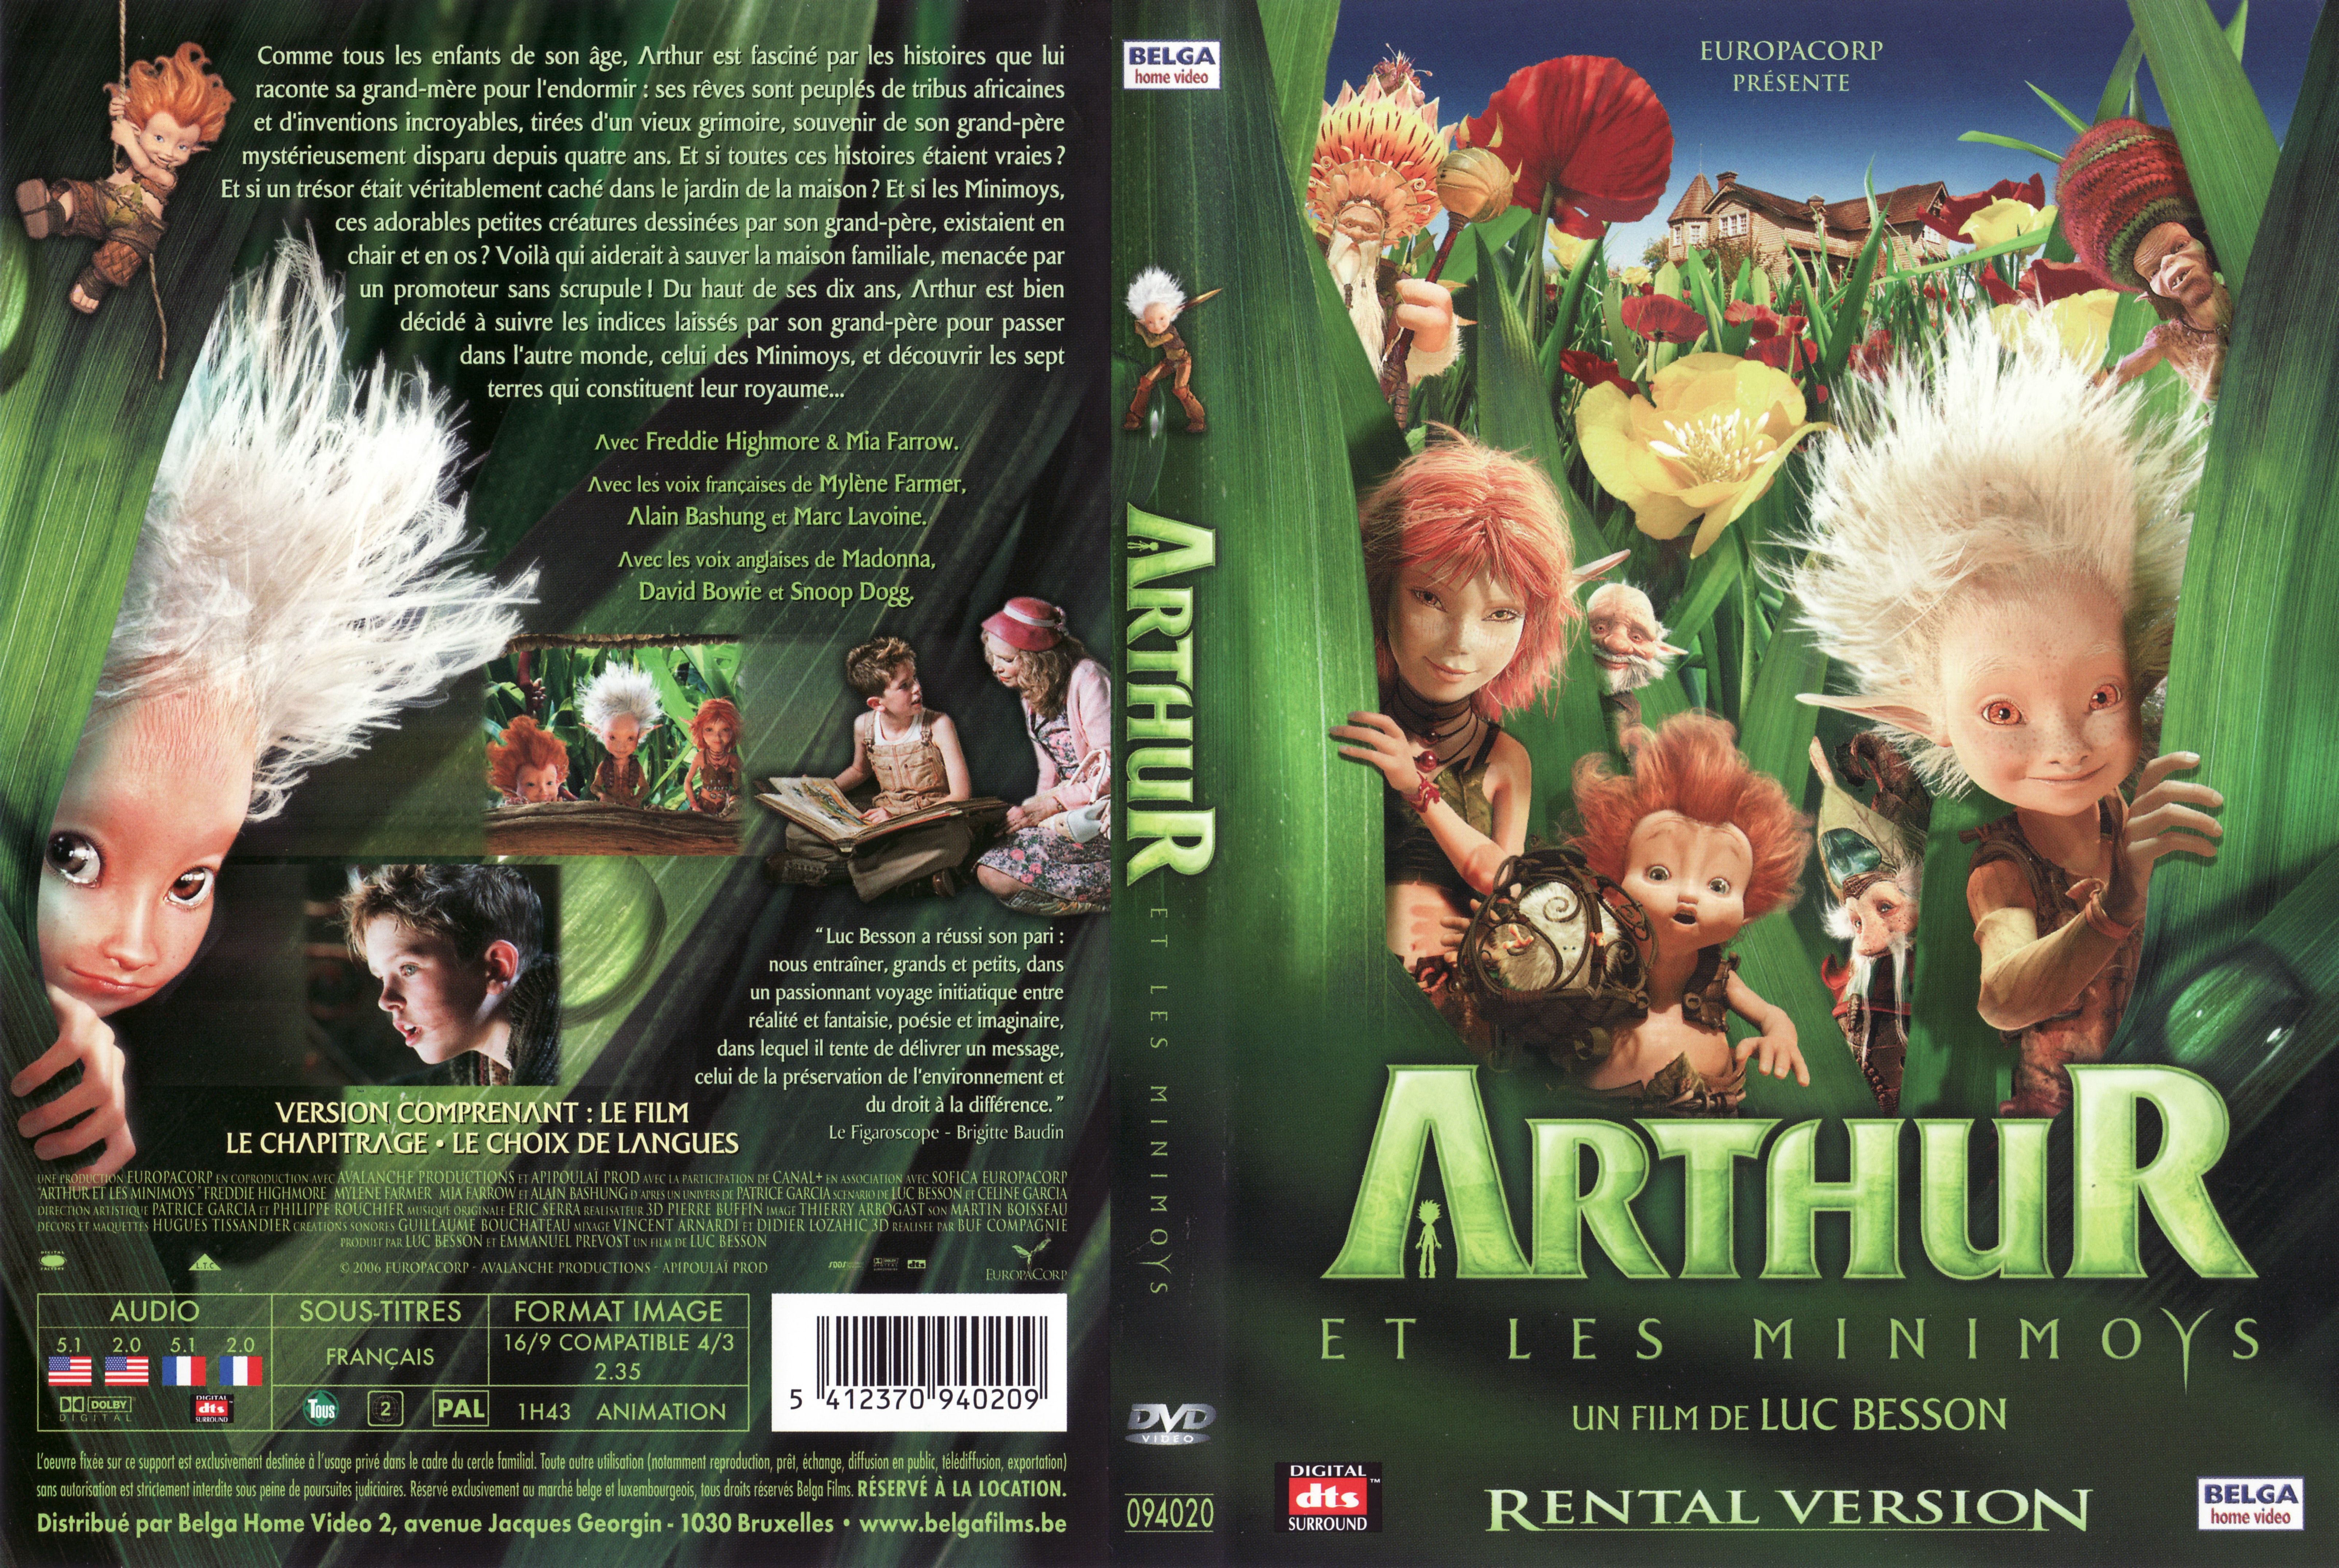 Jaquette DVD Arthur et les minimoys